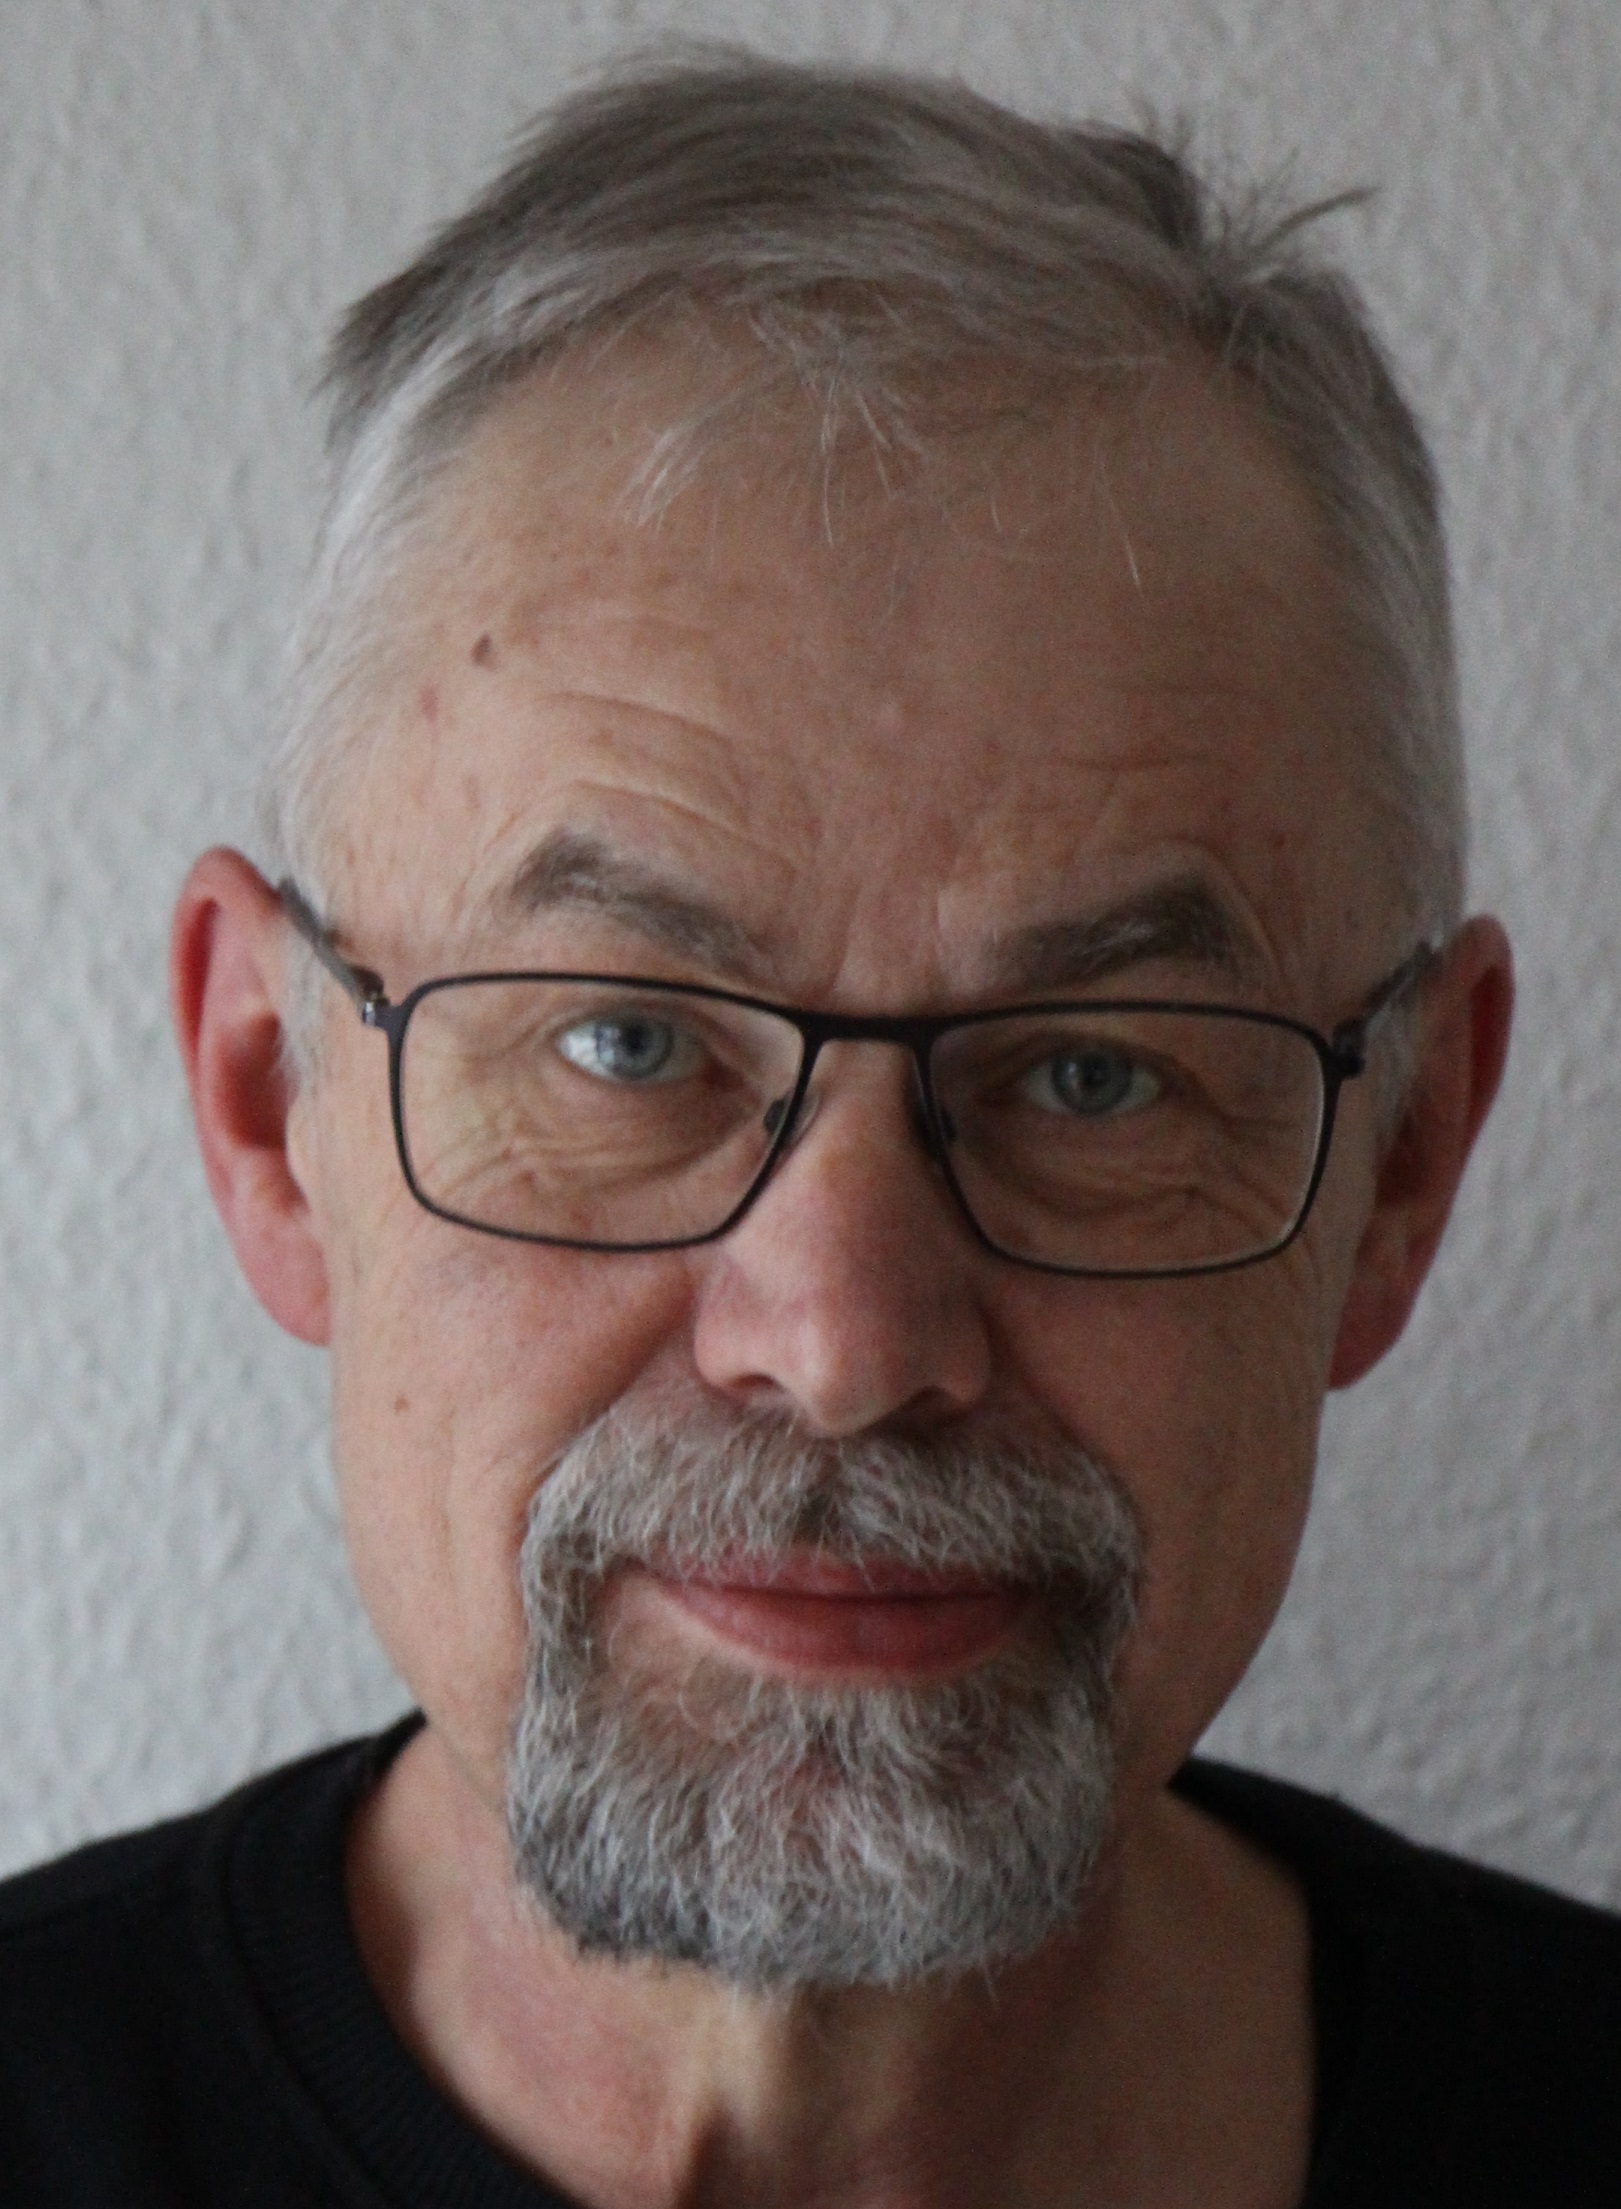 Jens Aage Poulsen